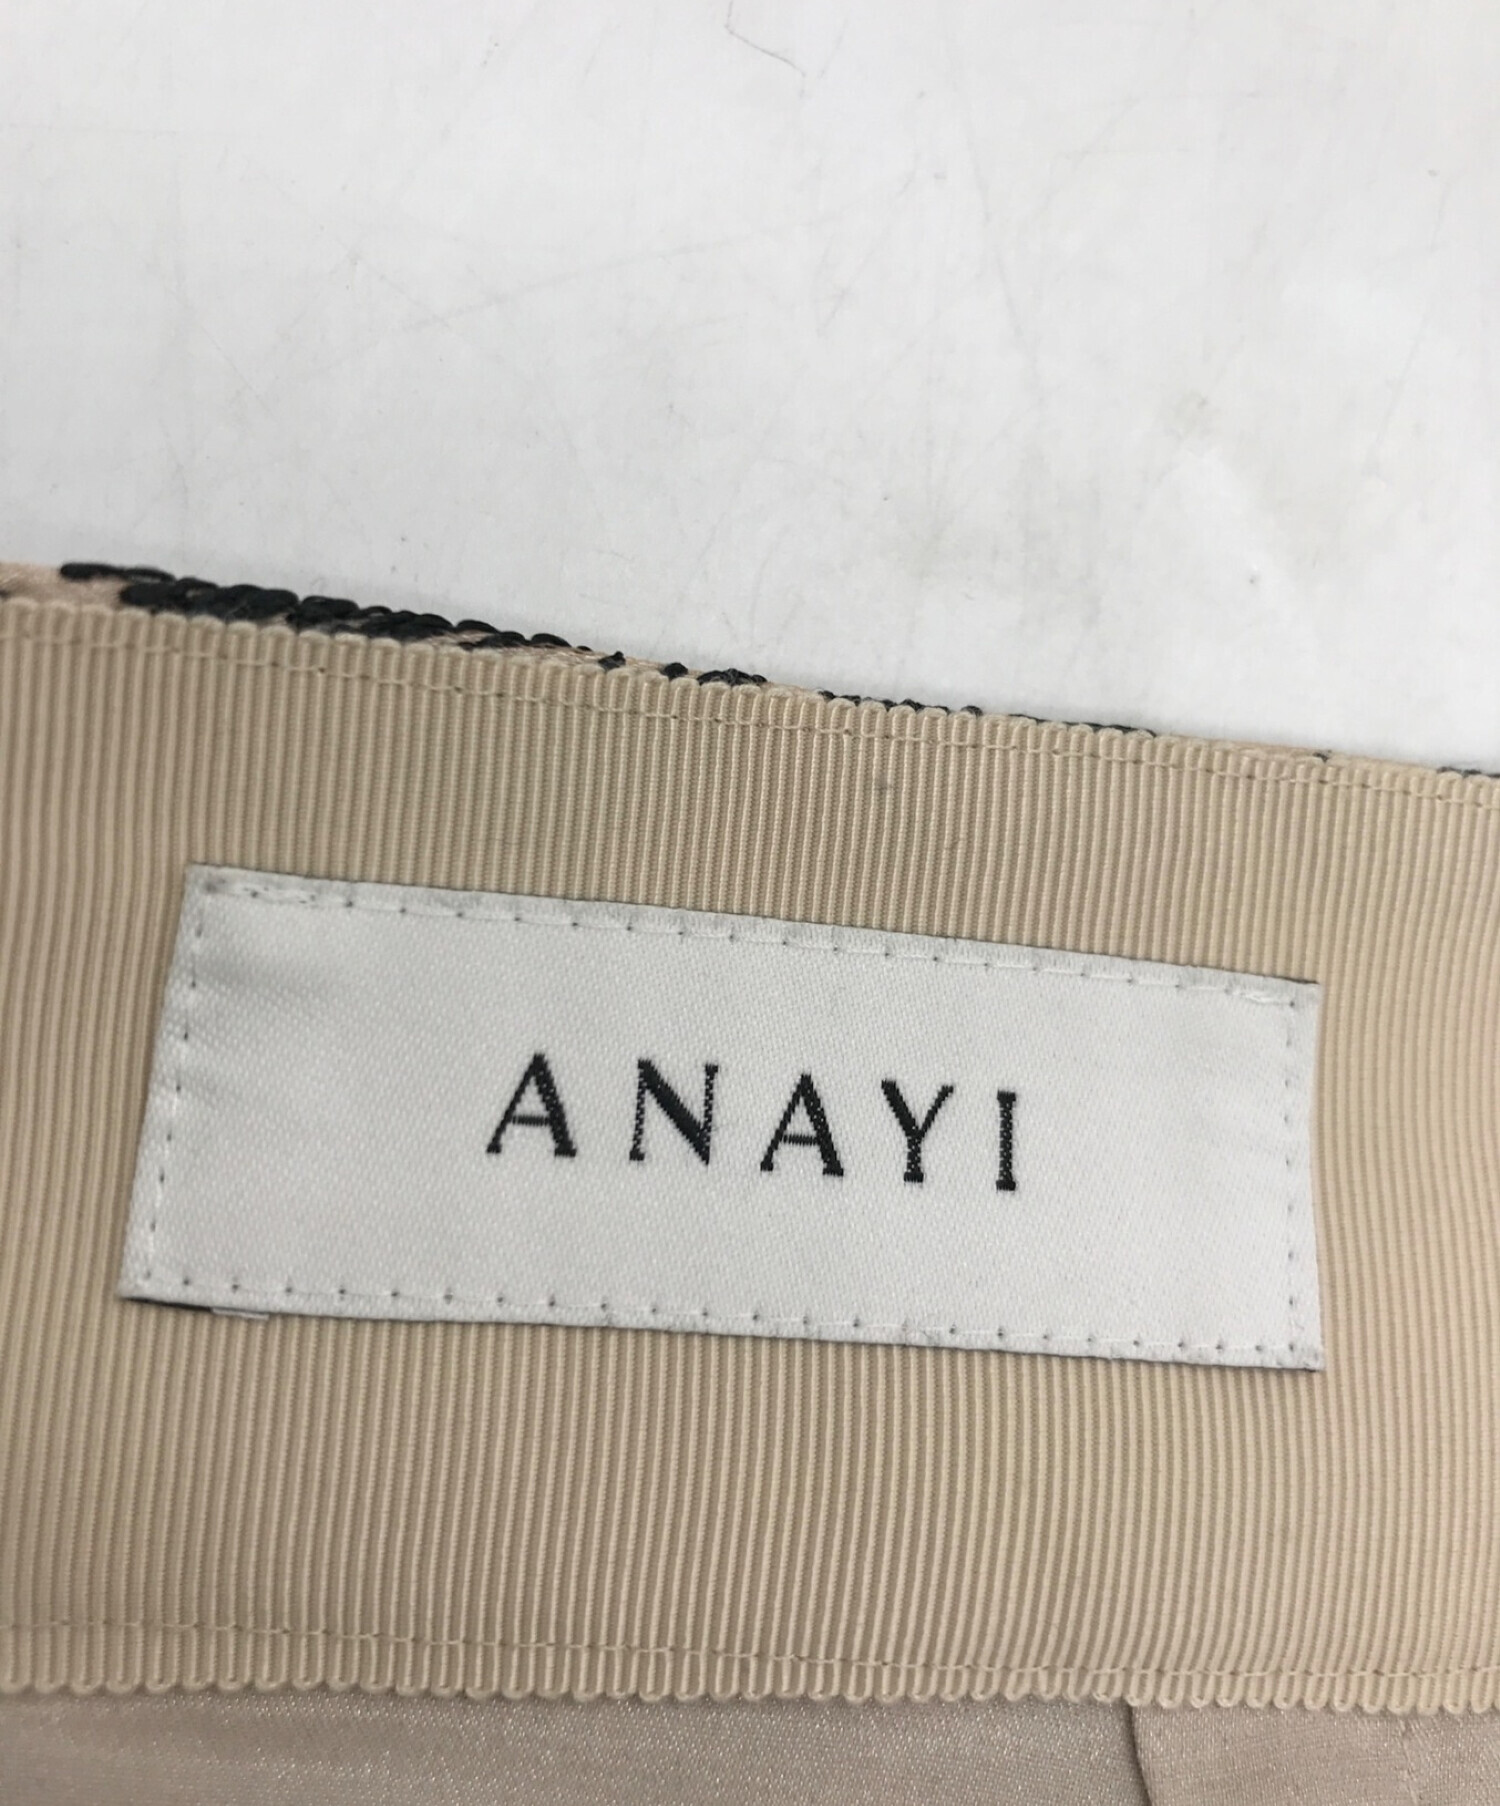 ANAYI (アナイ) ドローイングエンブロイダリースカート ベージュ×ブラック サイズ:38